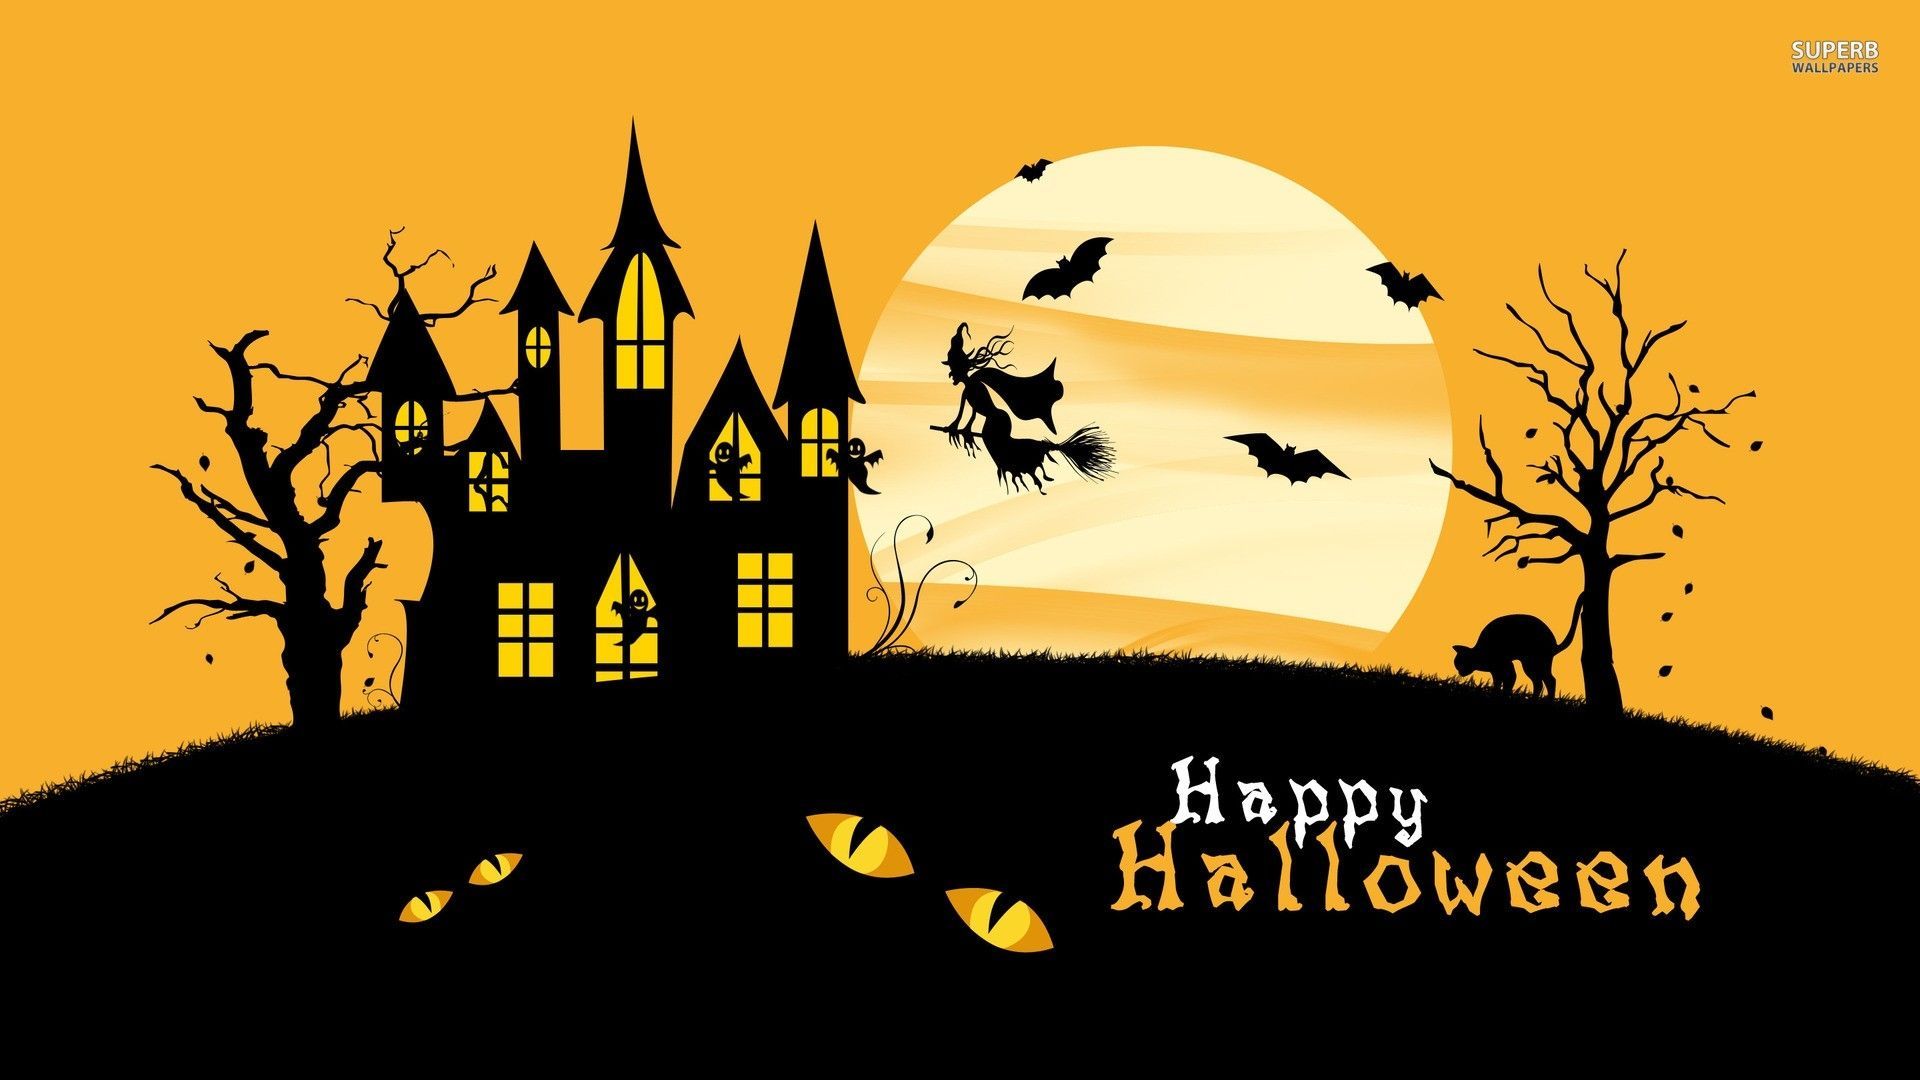 Happy Halloween 2020 Wallpaper HD for Desktop. Happy halloween picture, Halloween wallpaper, Halloween picture